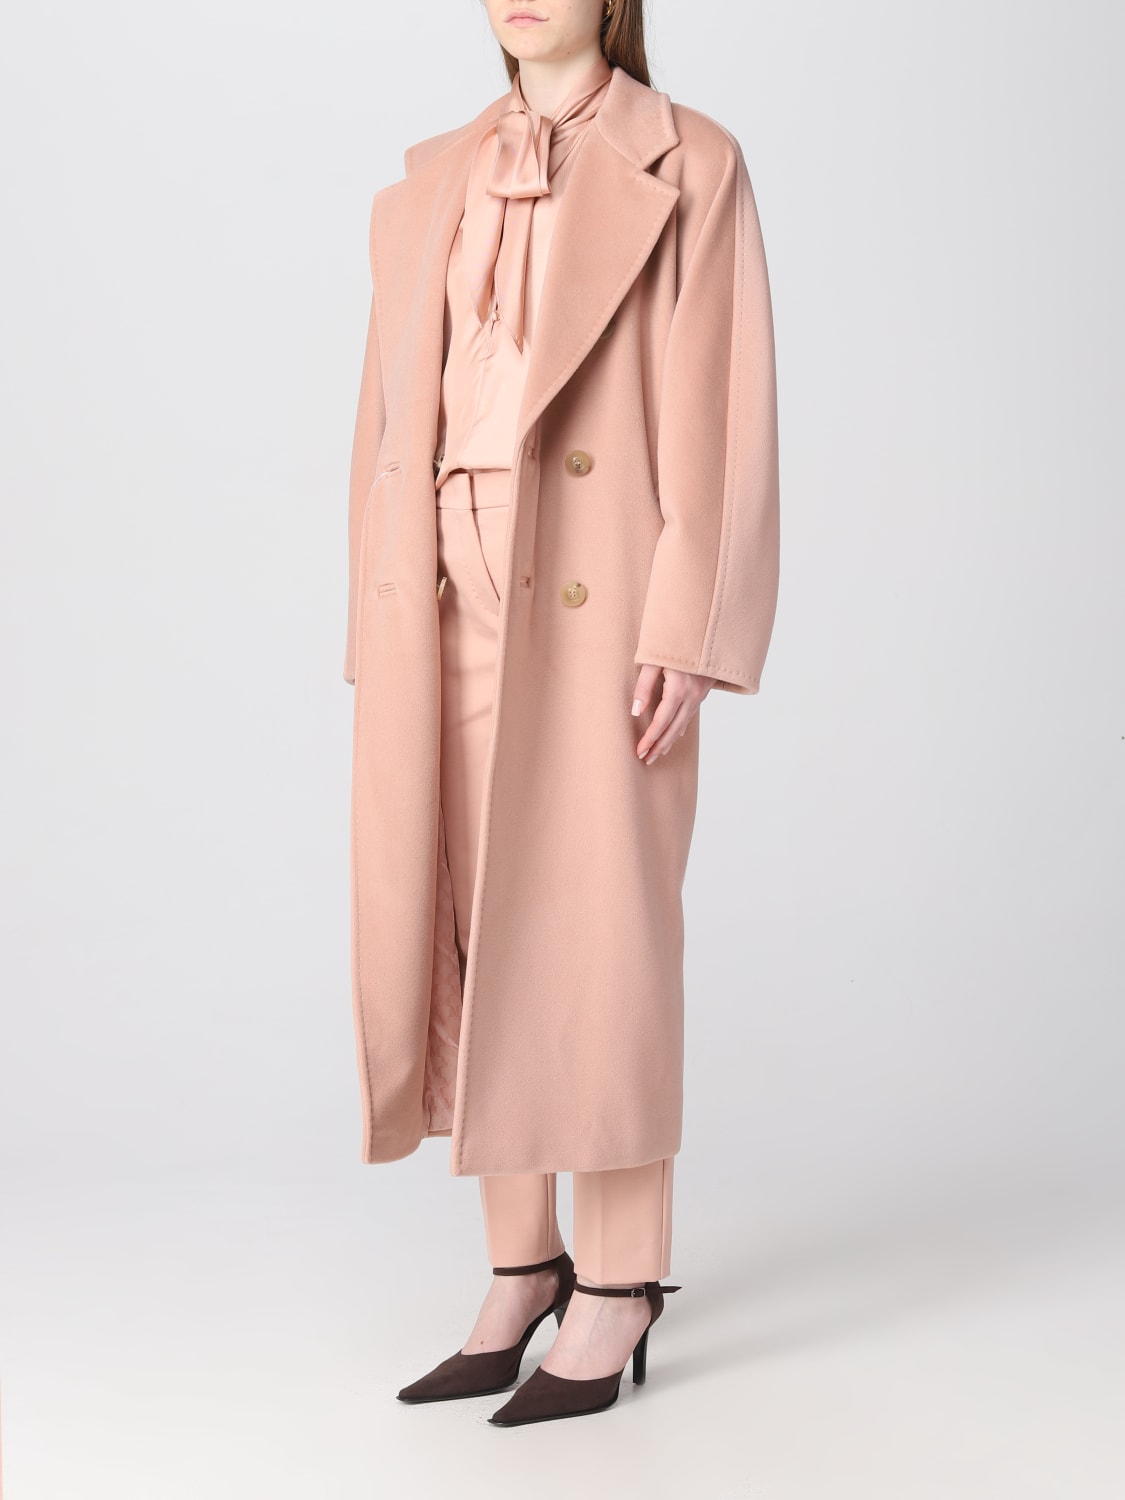 MAX MARA: Madame coat in wool blend - Pink | Max Mara coat